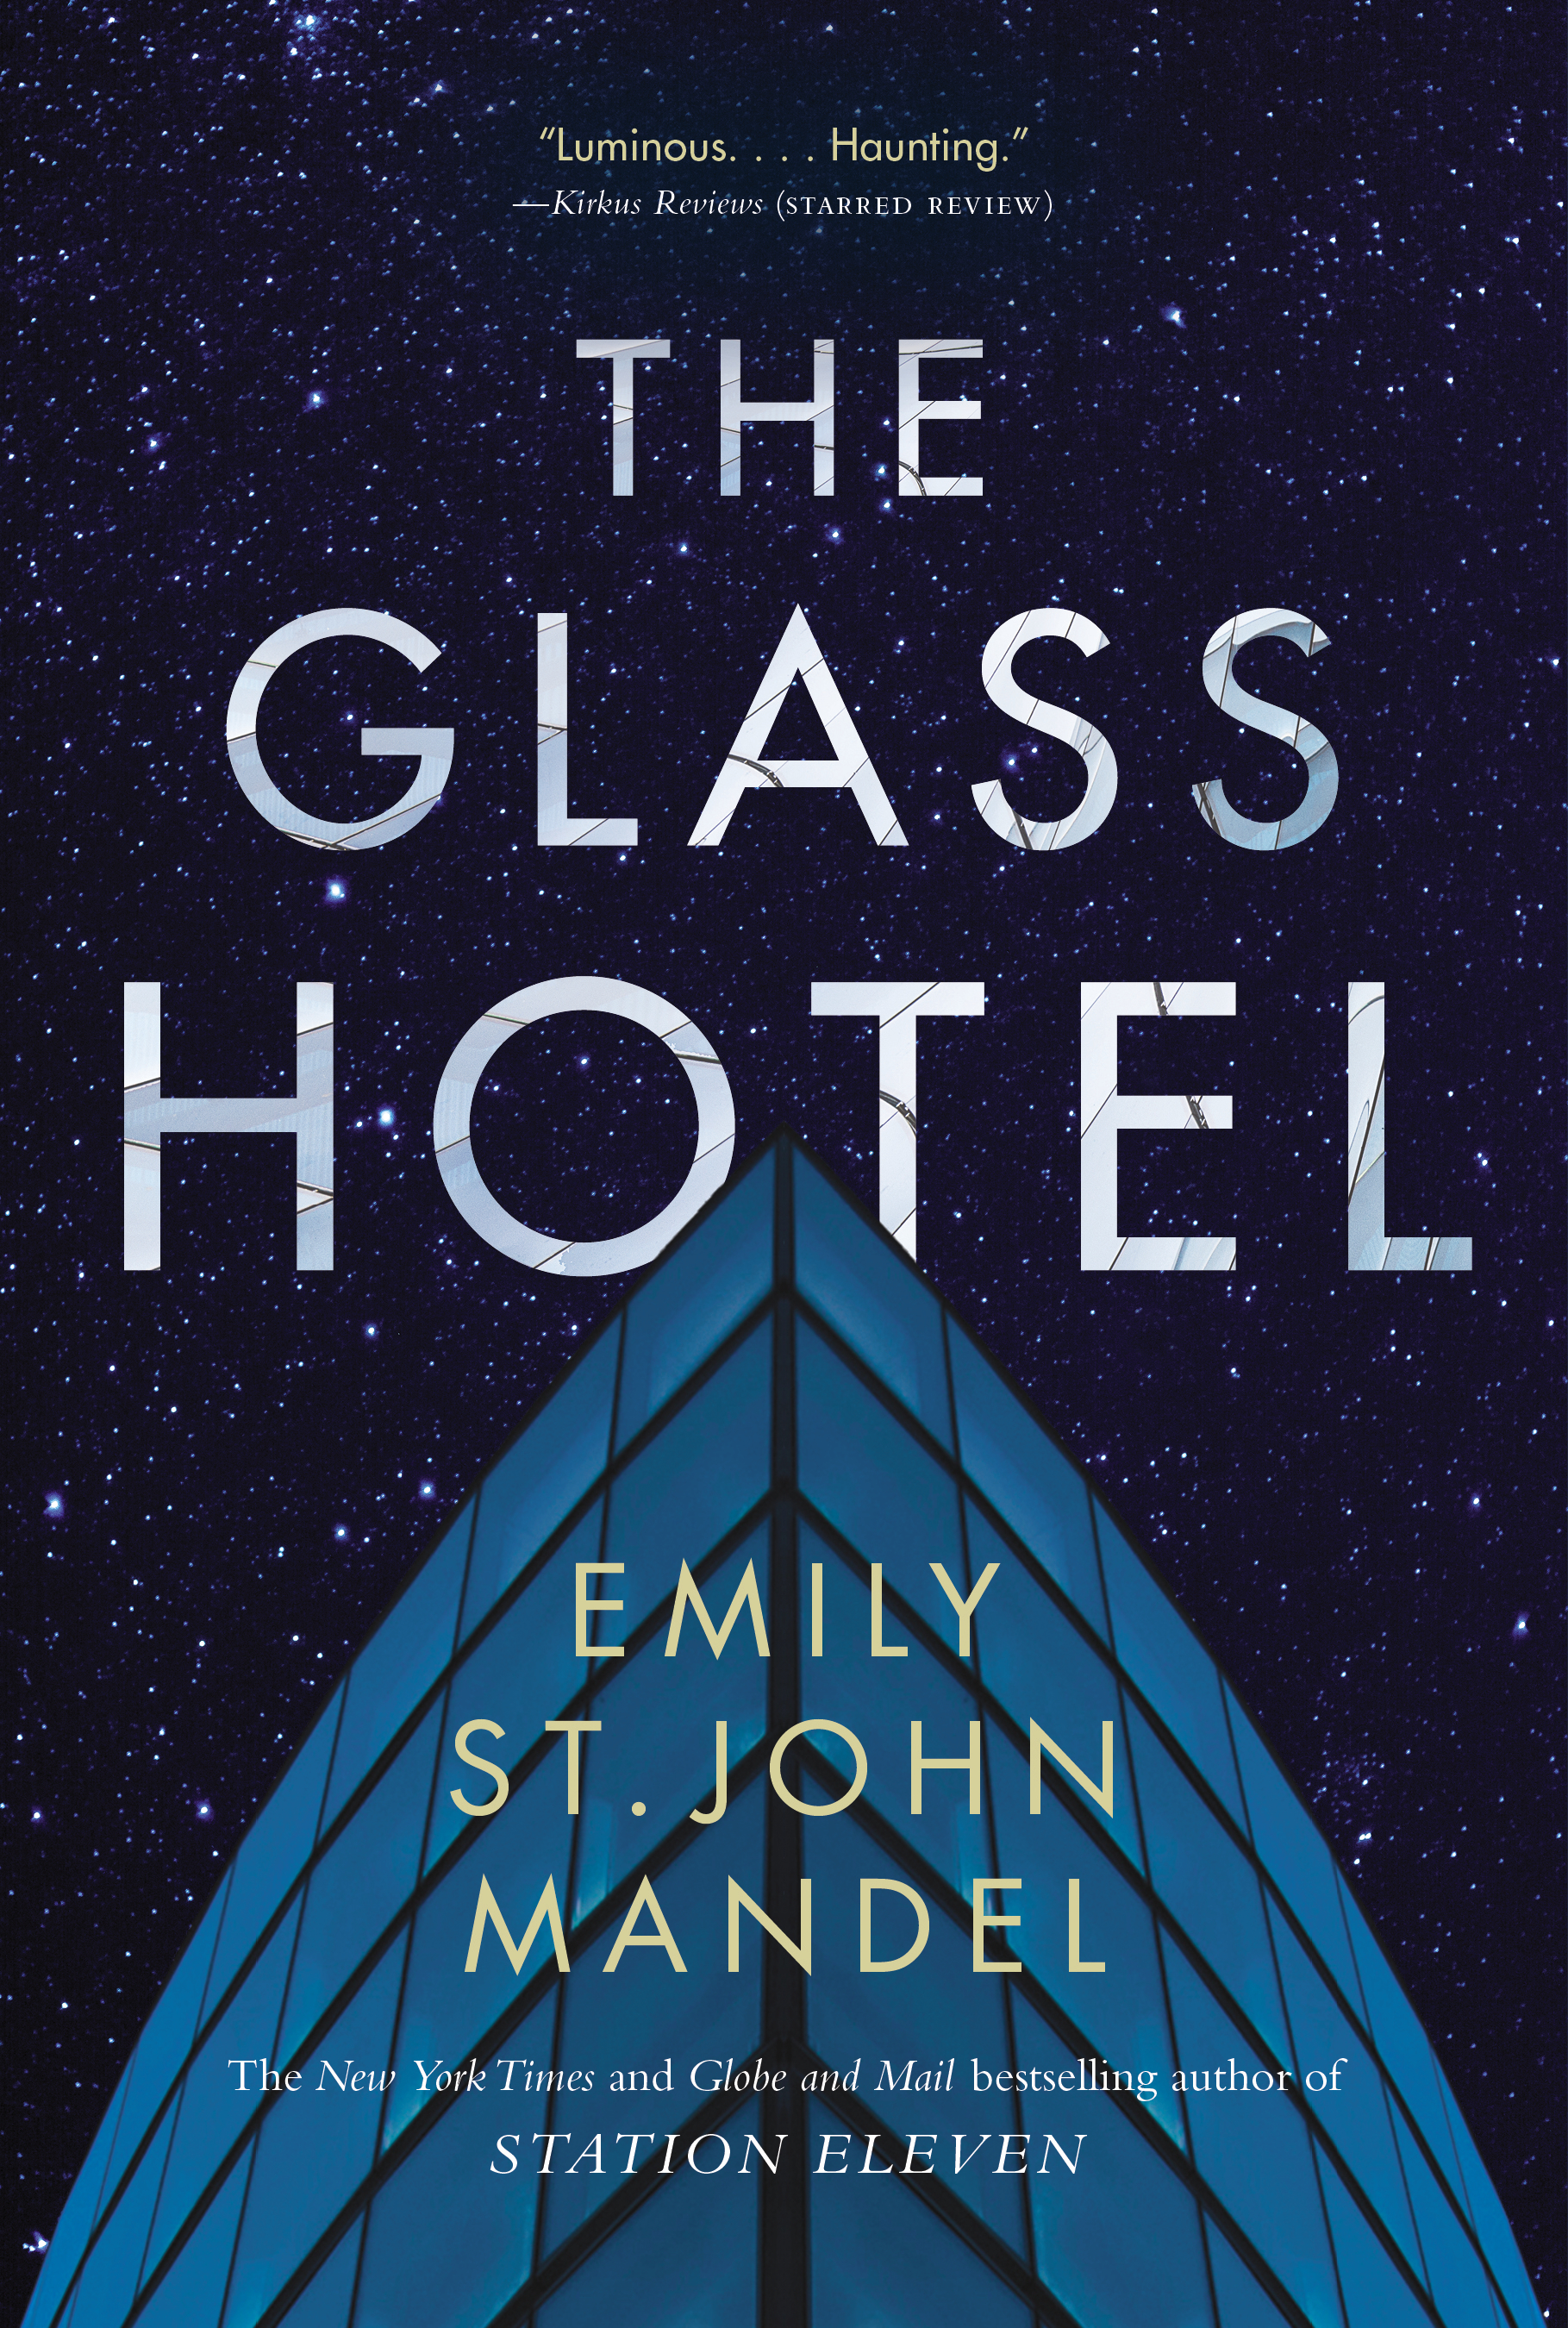 Mandel, Emily St John - The Glass Hotel - BookCover